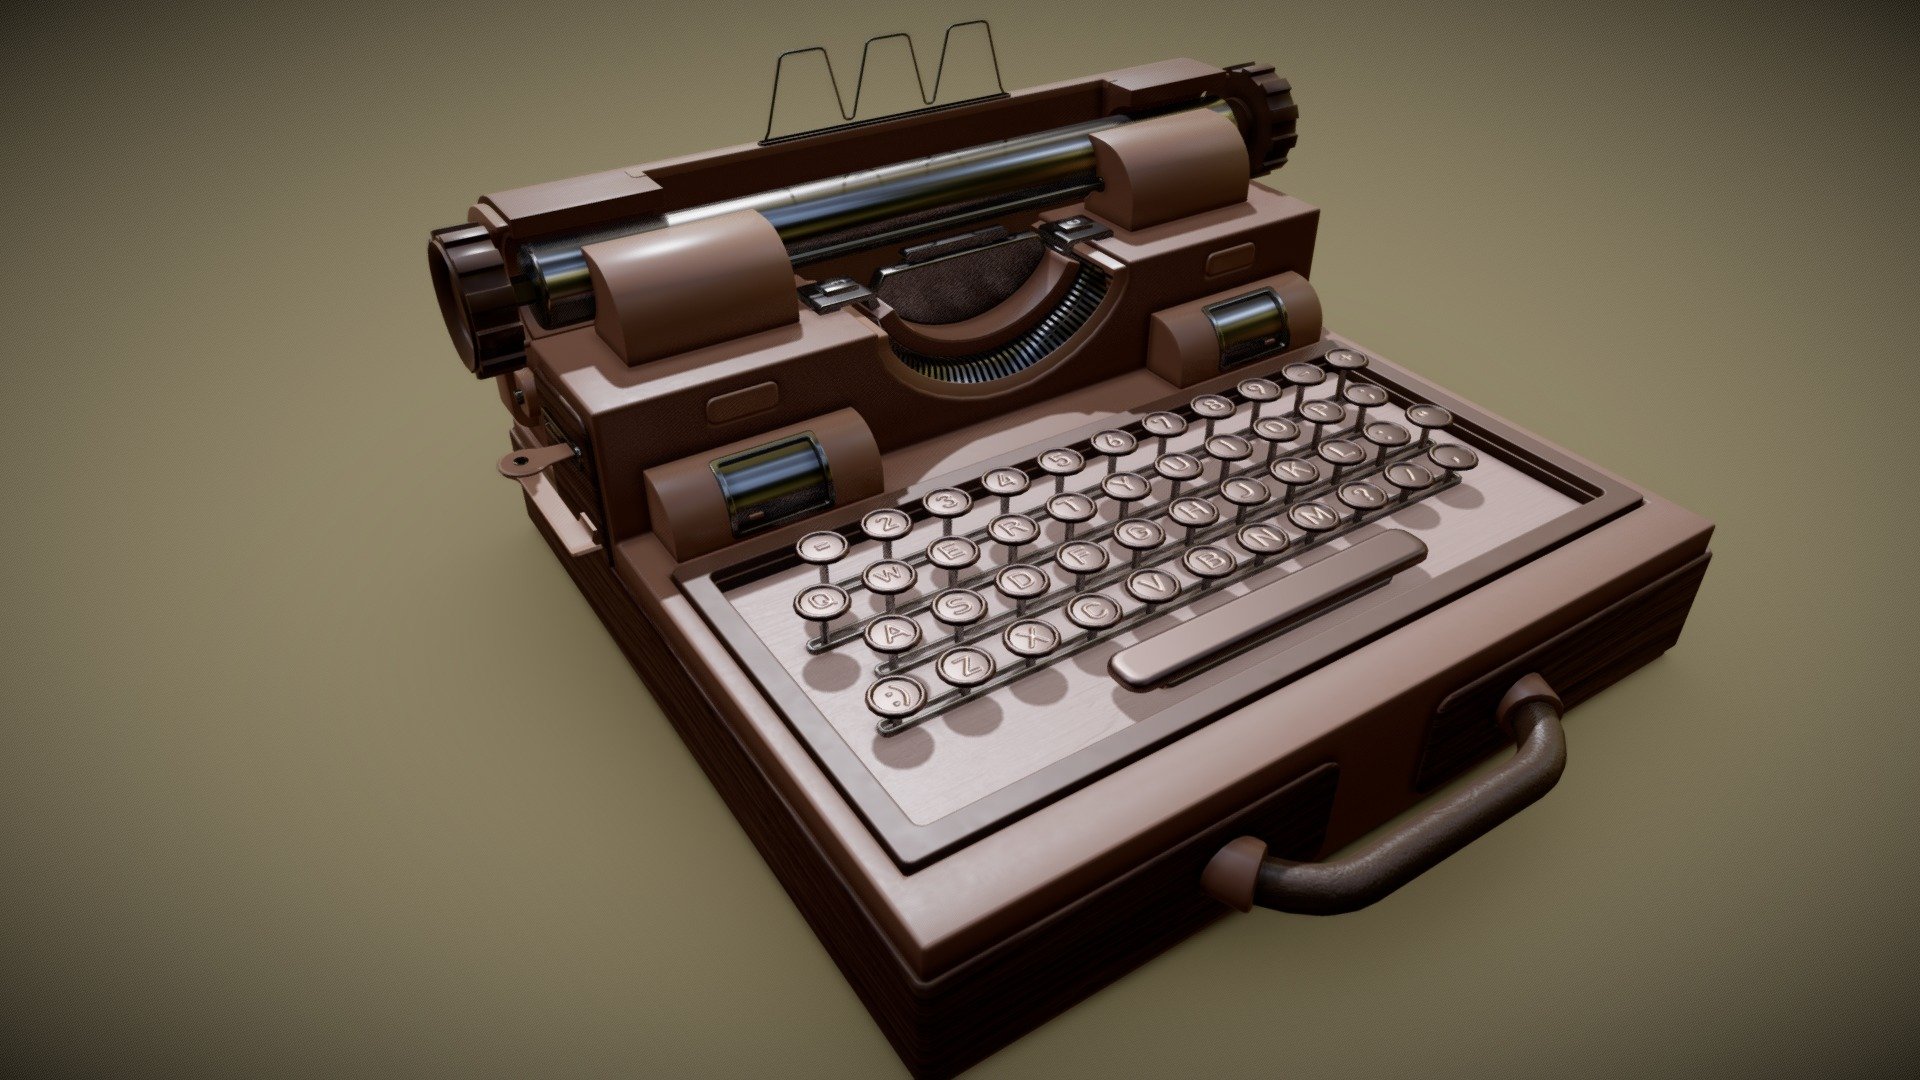 decorative typewriter - decorative typewriter - Download Free 3D model by 3DWorkbench 3d model